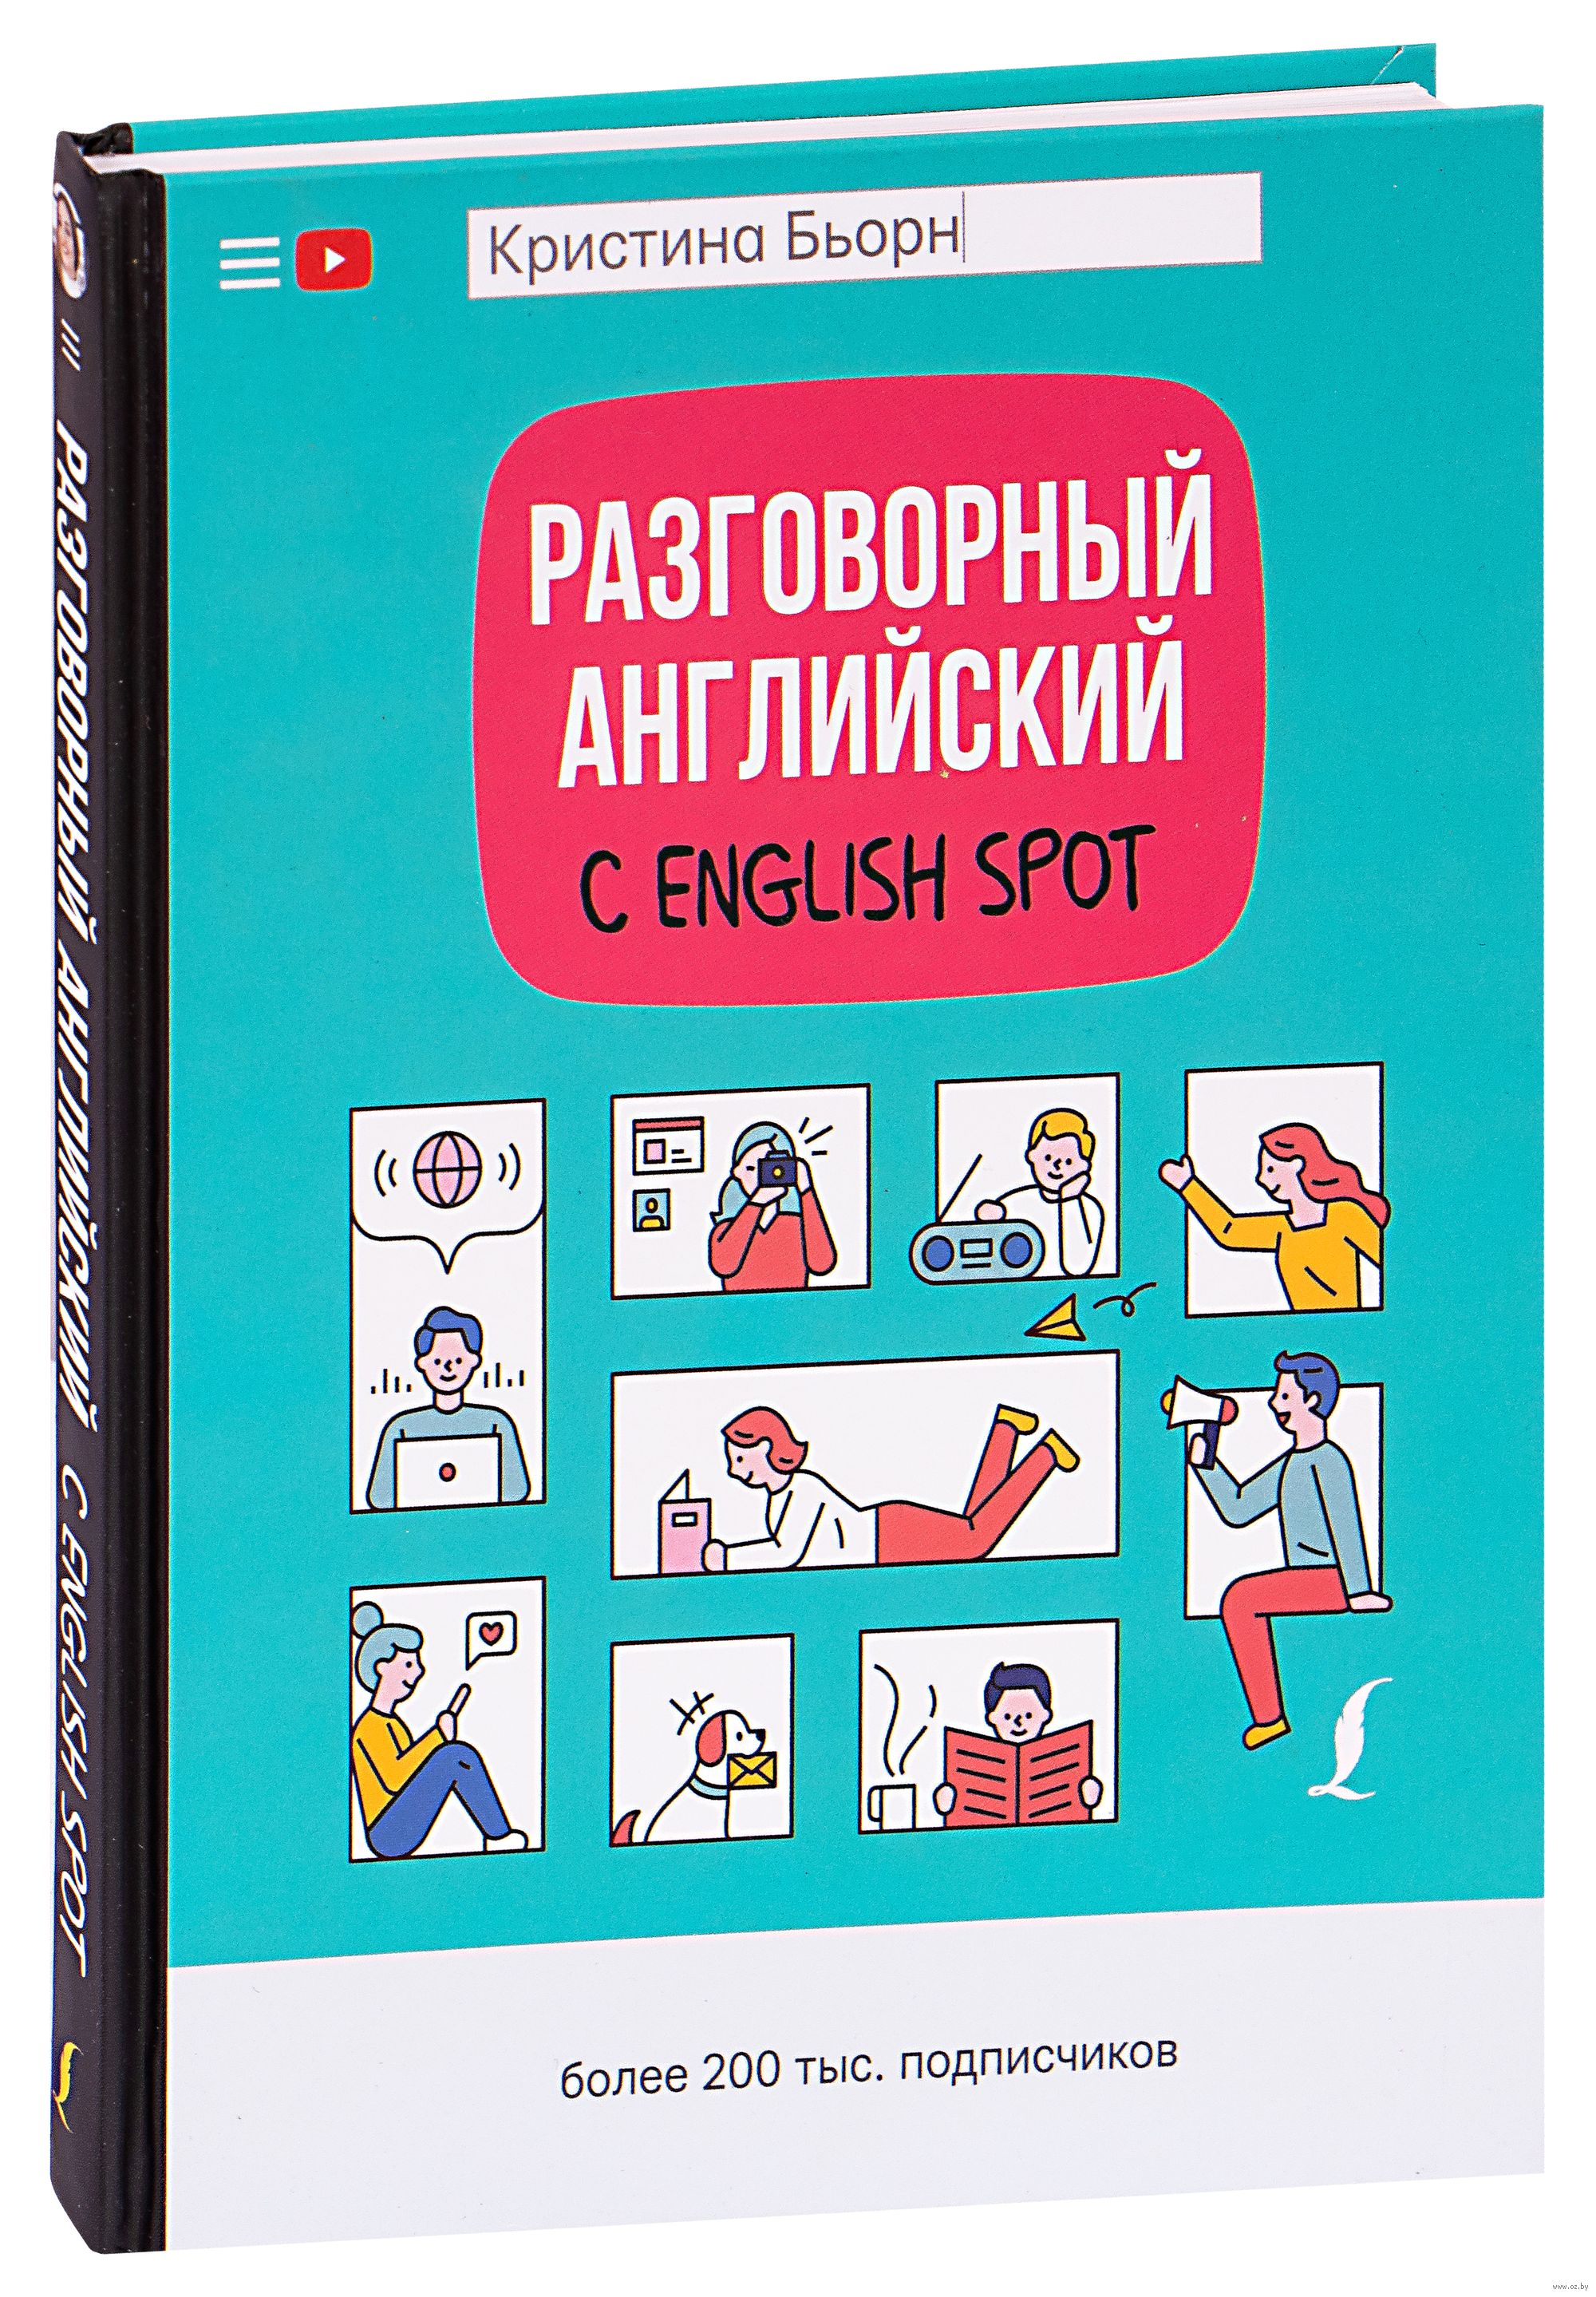 Спот инглиш. Разговорный английский с English spot. Разговорный английский книга. Уроки разговорного английского.